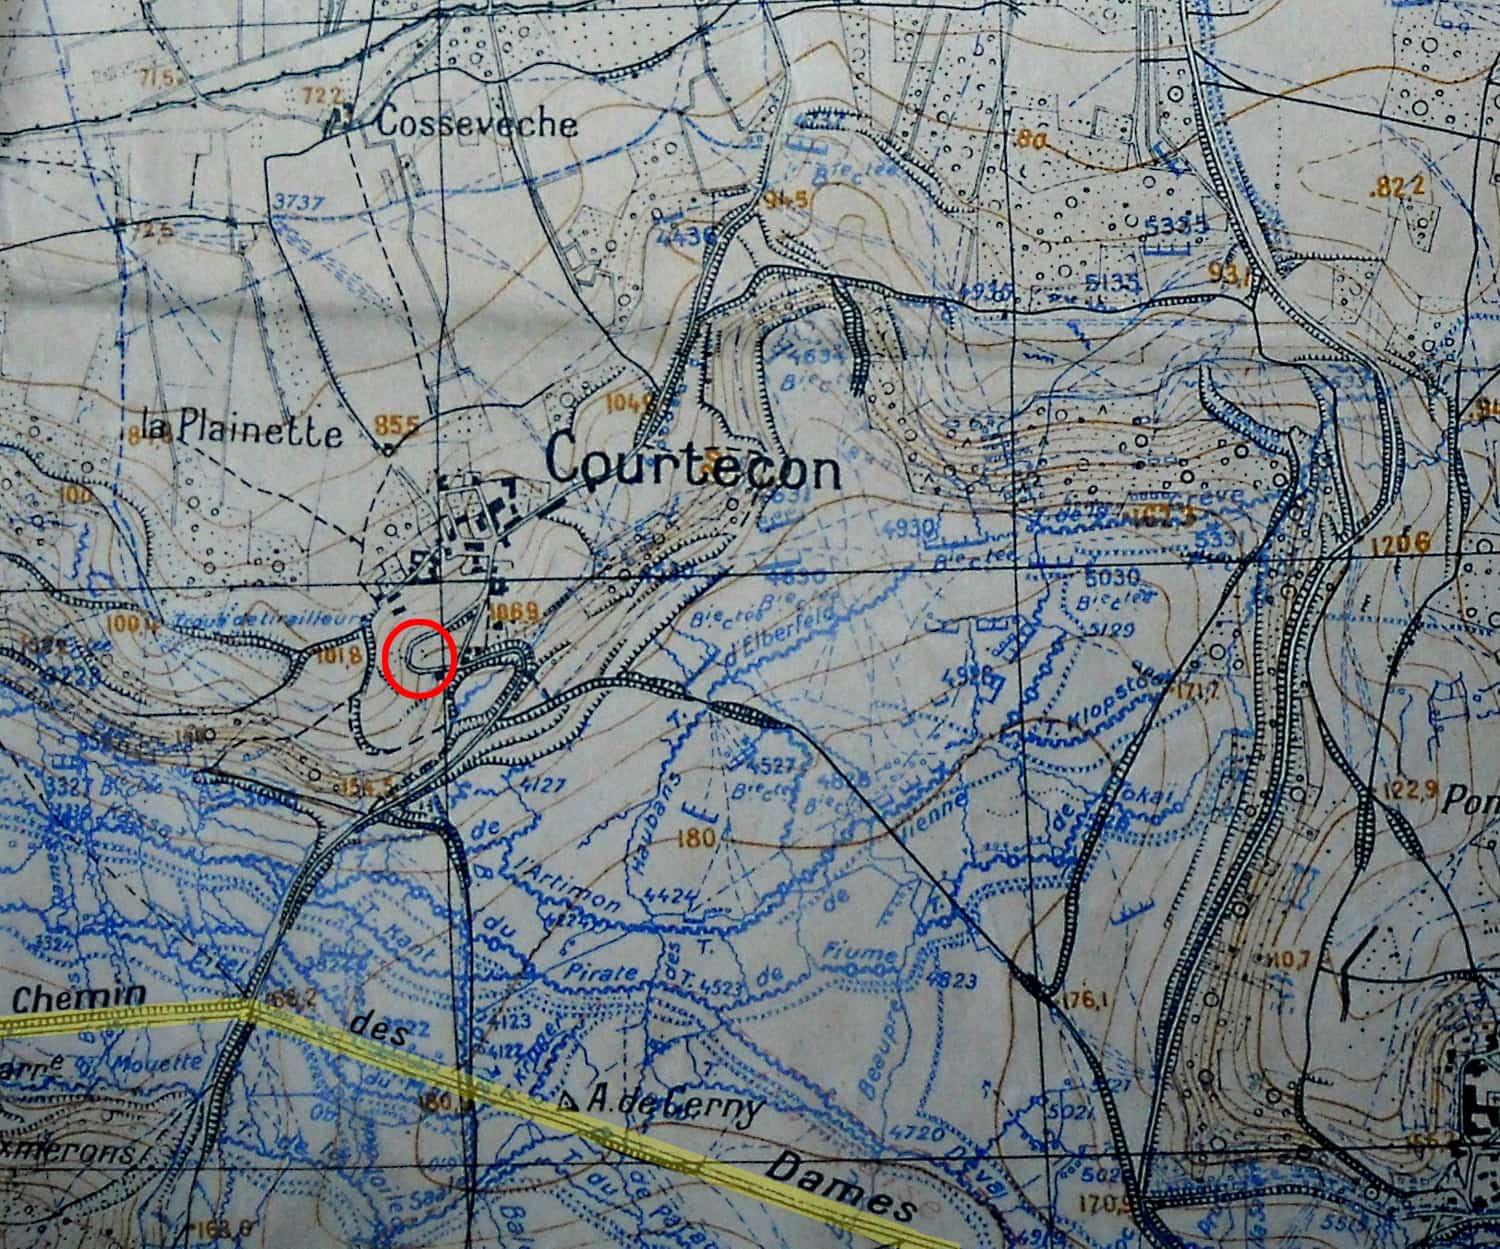 17 - Aisne - Carte de Courtecon -min.jpg